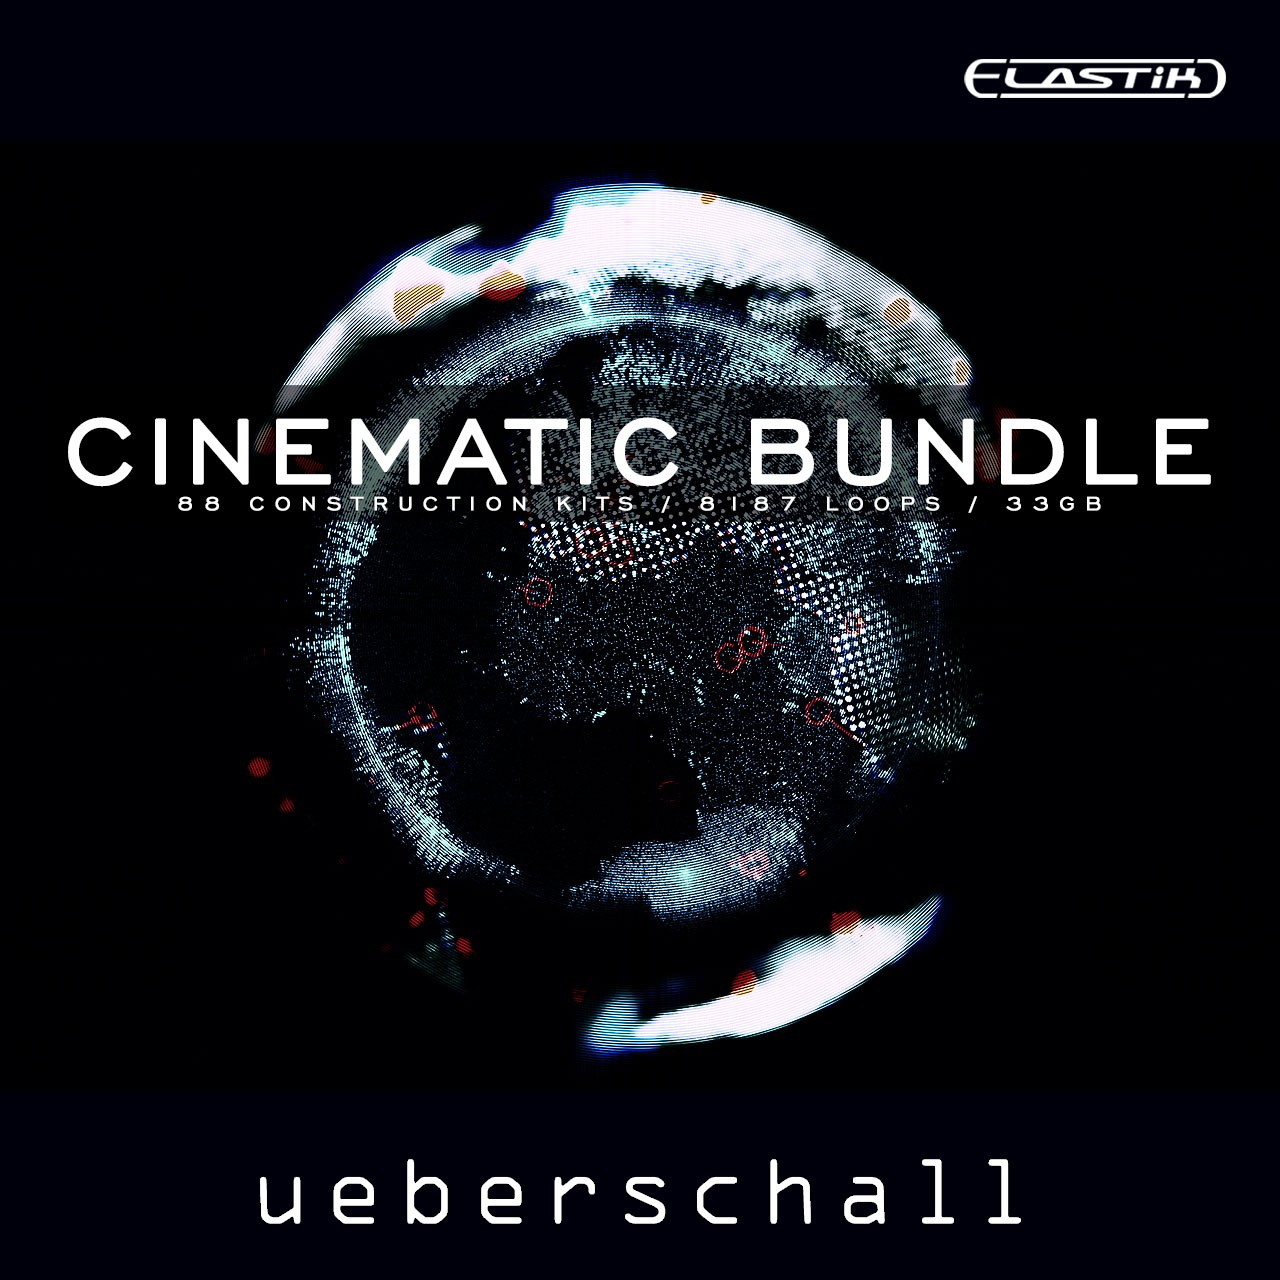 Cinematic Bundle-ueberschall-1280x1280.jpg